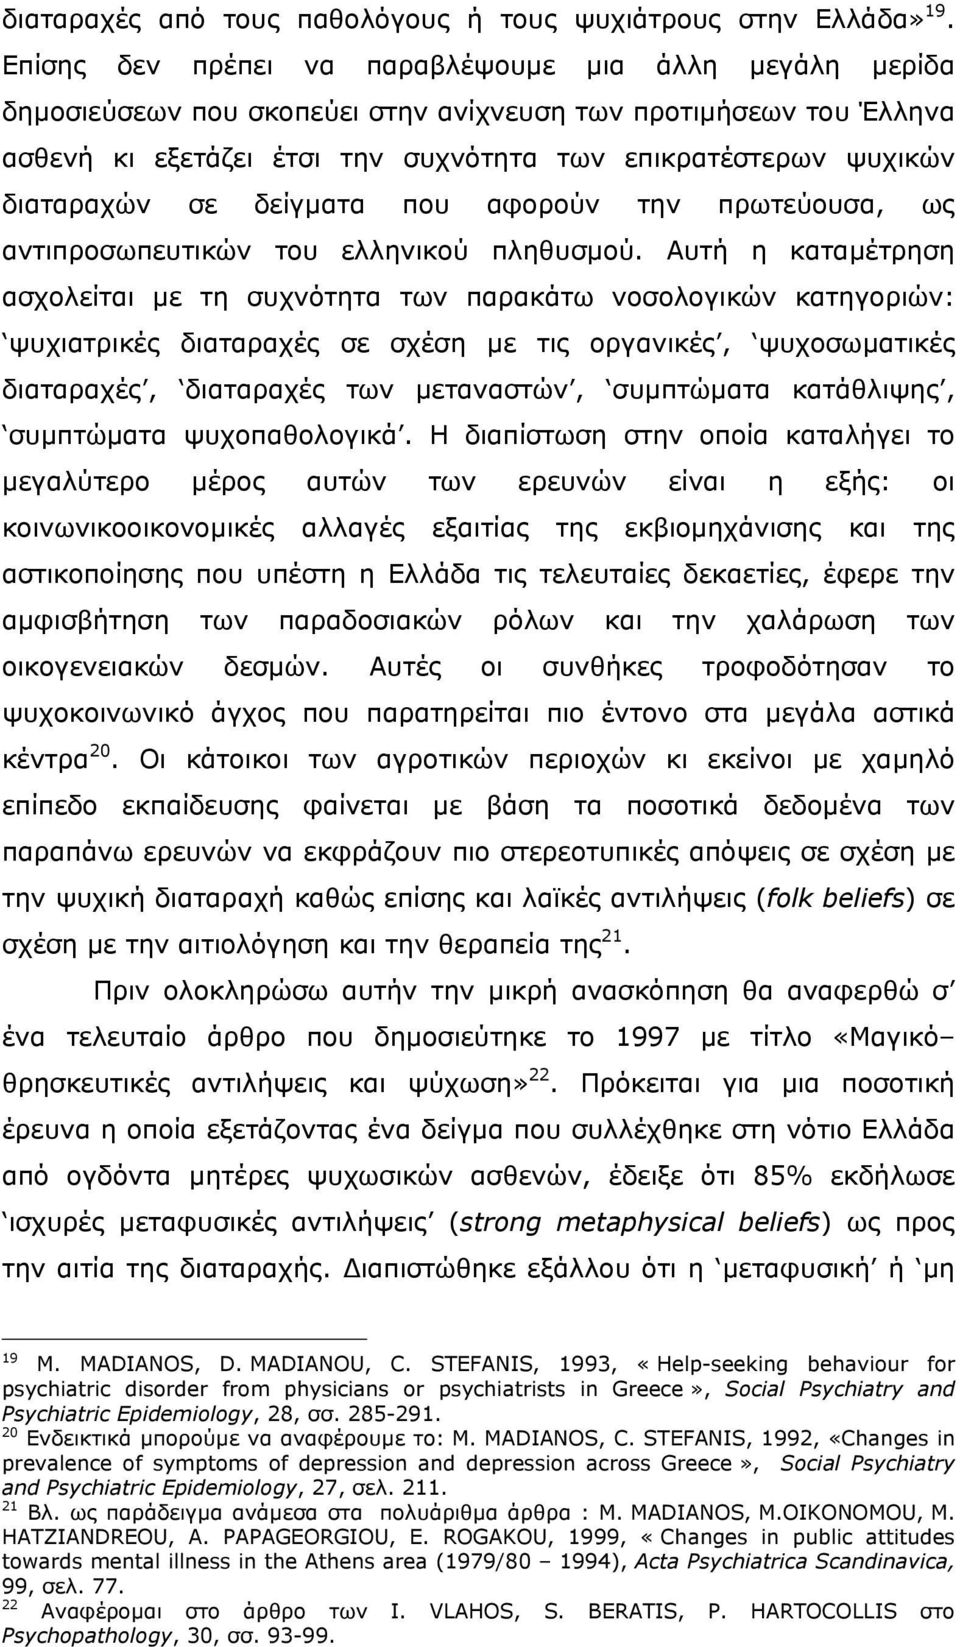 διαταραχών σε δείγµατα που αφορούν την πρωτεύουσα, ως αντιπροσωπευτικών του ελληνικού πληθυσµού.